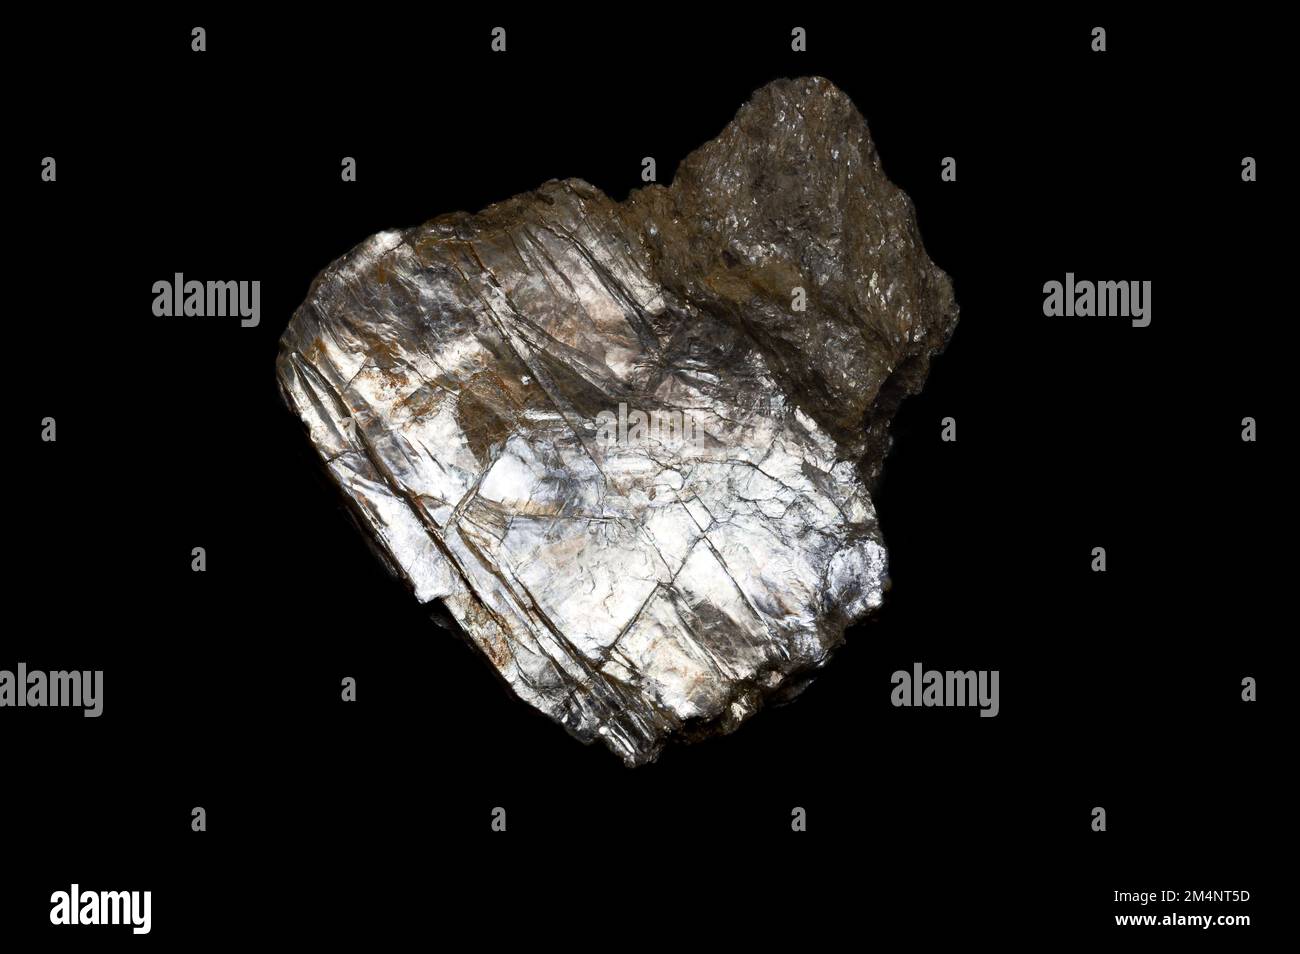 Moscovite, conosciuta anche come mica comune, isinglass o mica potassa. Il minerale silicato, con una scissione basale estremamente perfetta, può essere suddiviso in fogli sottili. Foto Stock